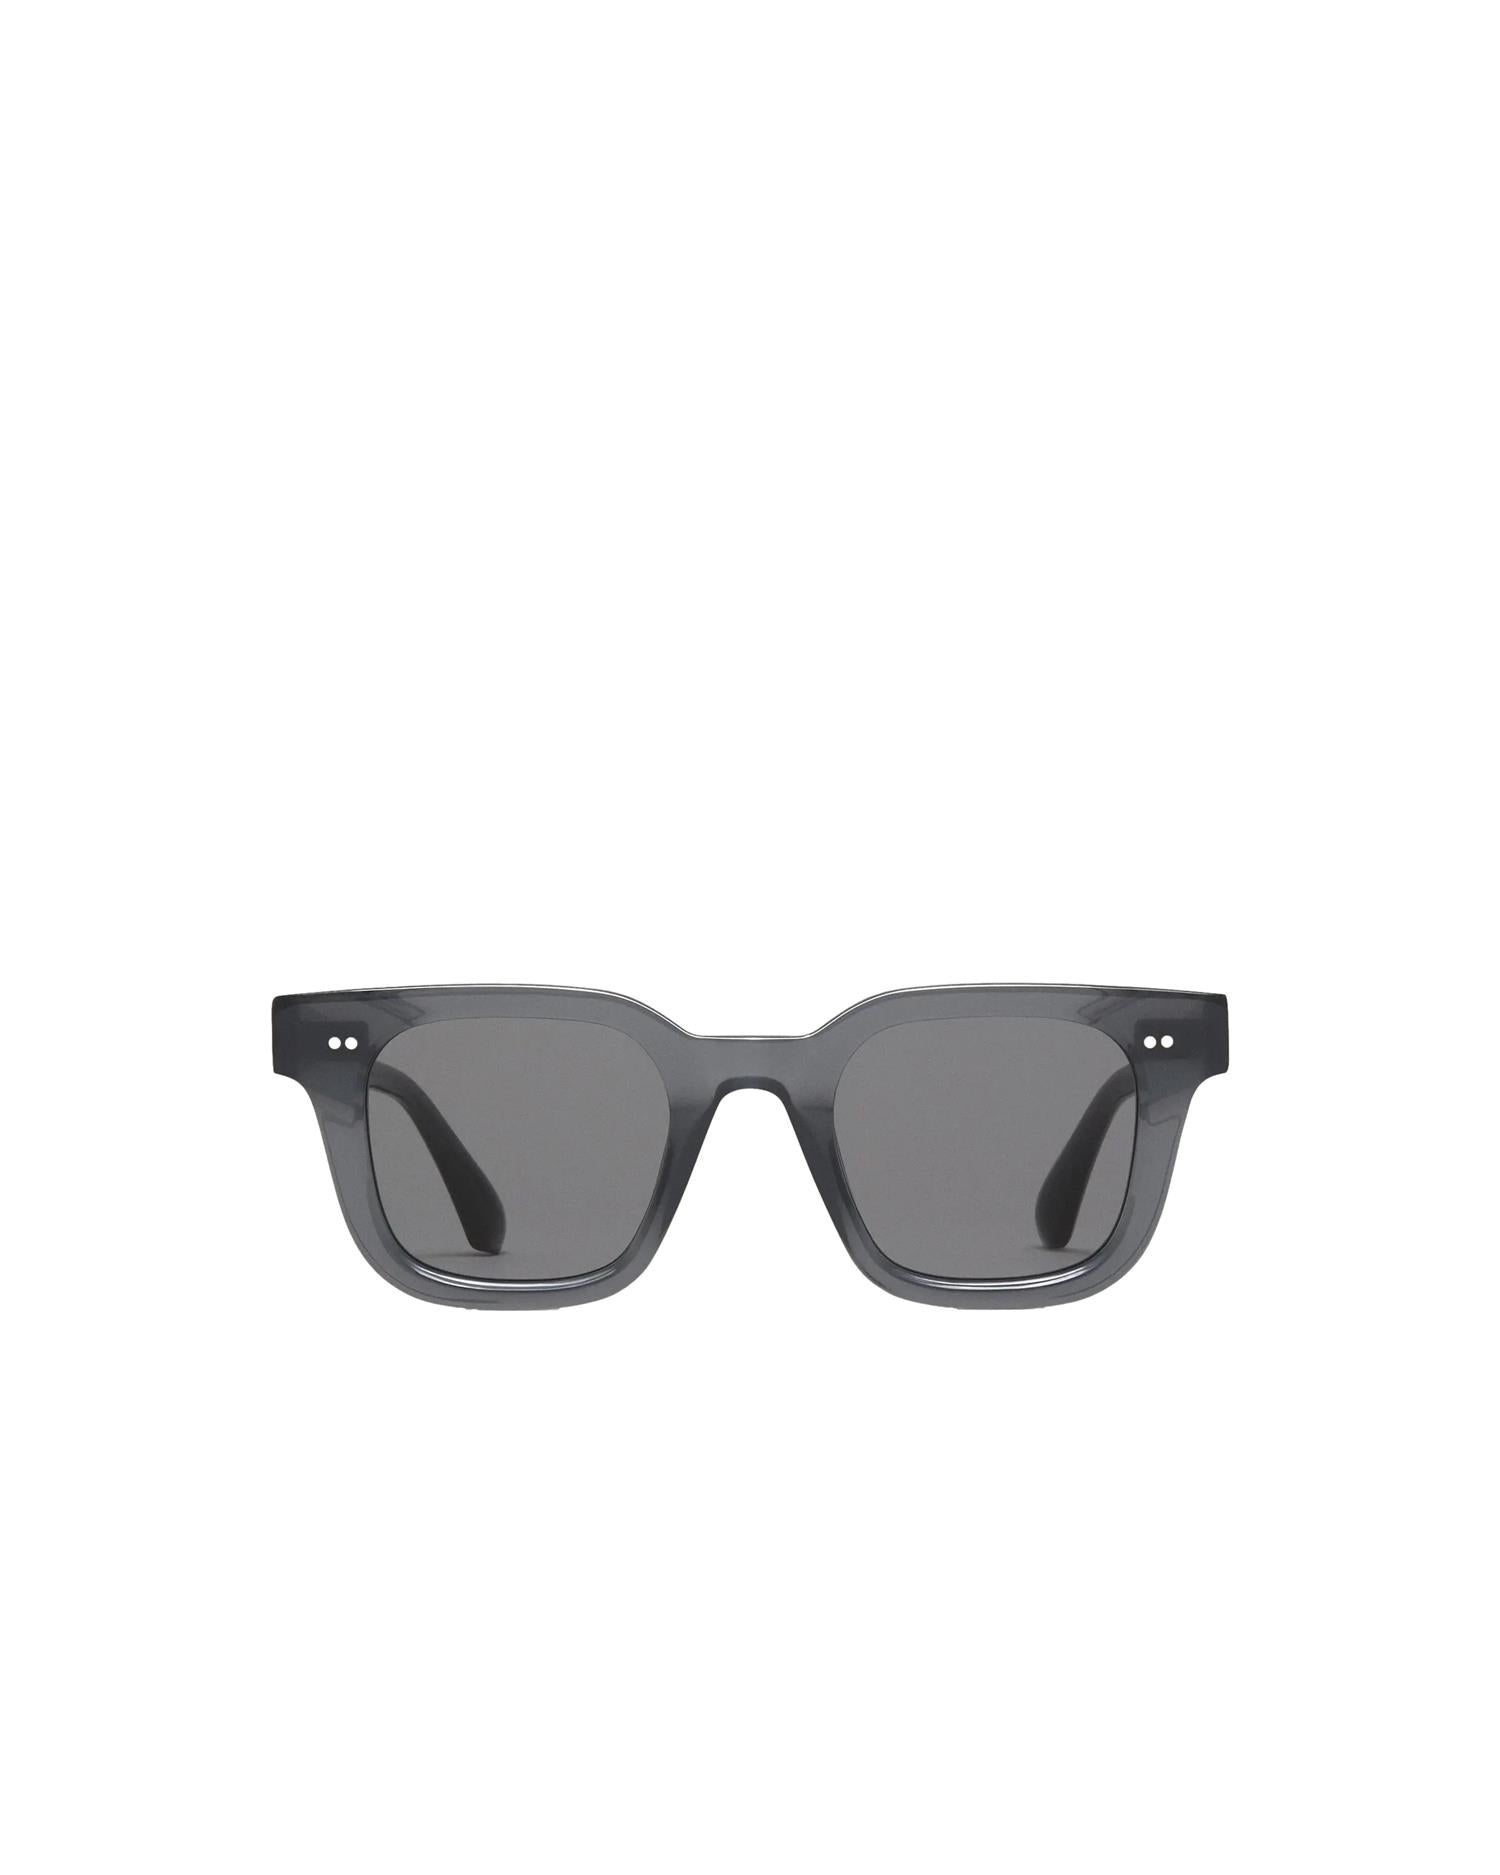 Chimi Eyewear 04 Dark Grey Solbriller Mørkegrå